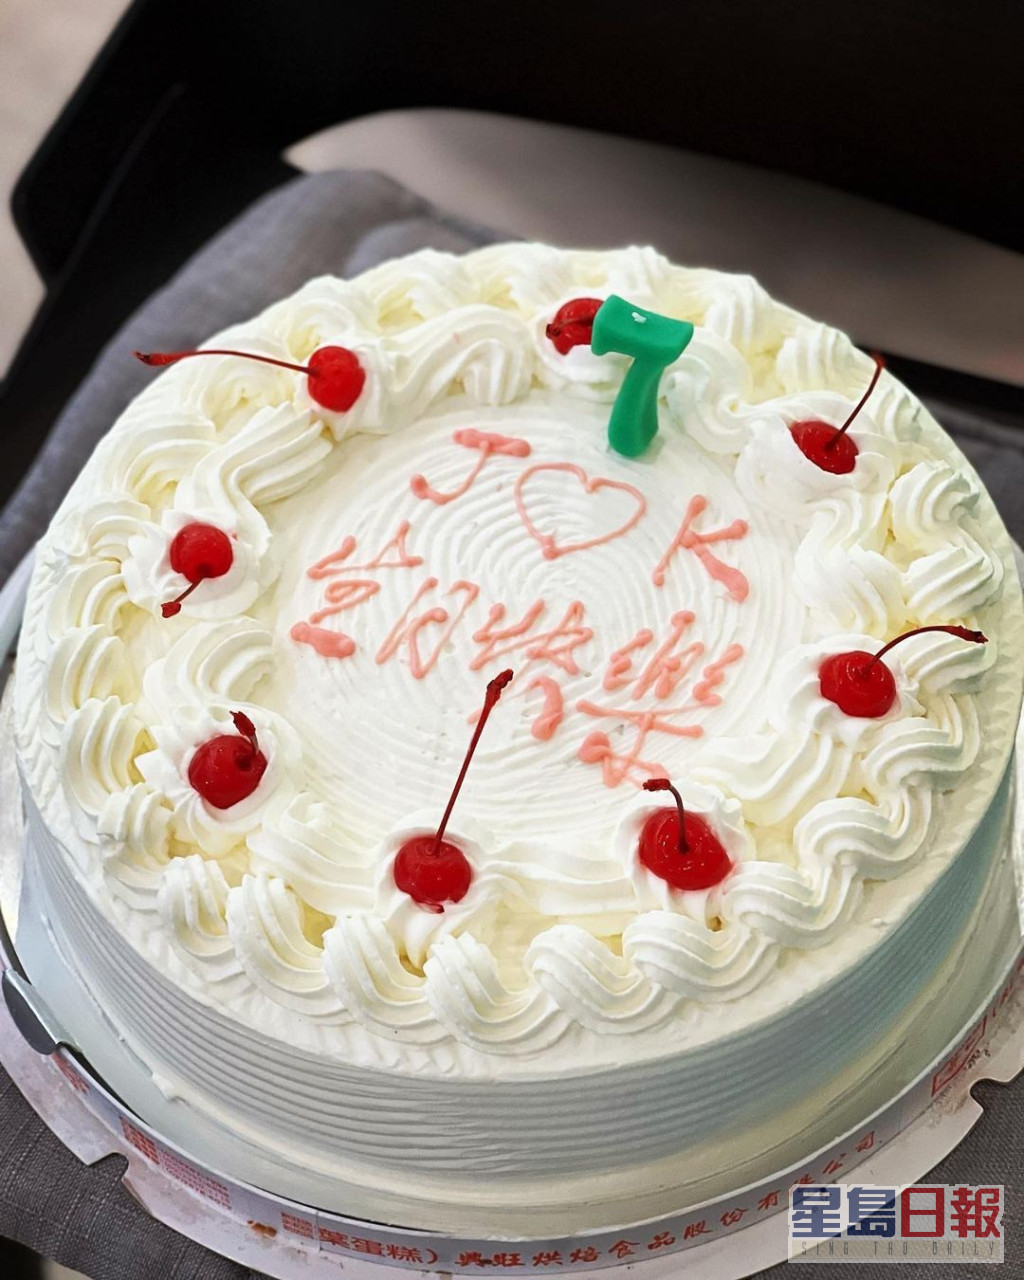 林志穎於本月初為一對孖仔慶祝7歲生日。